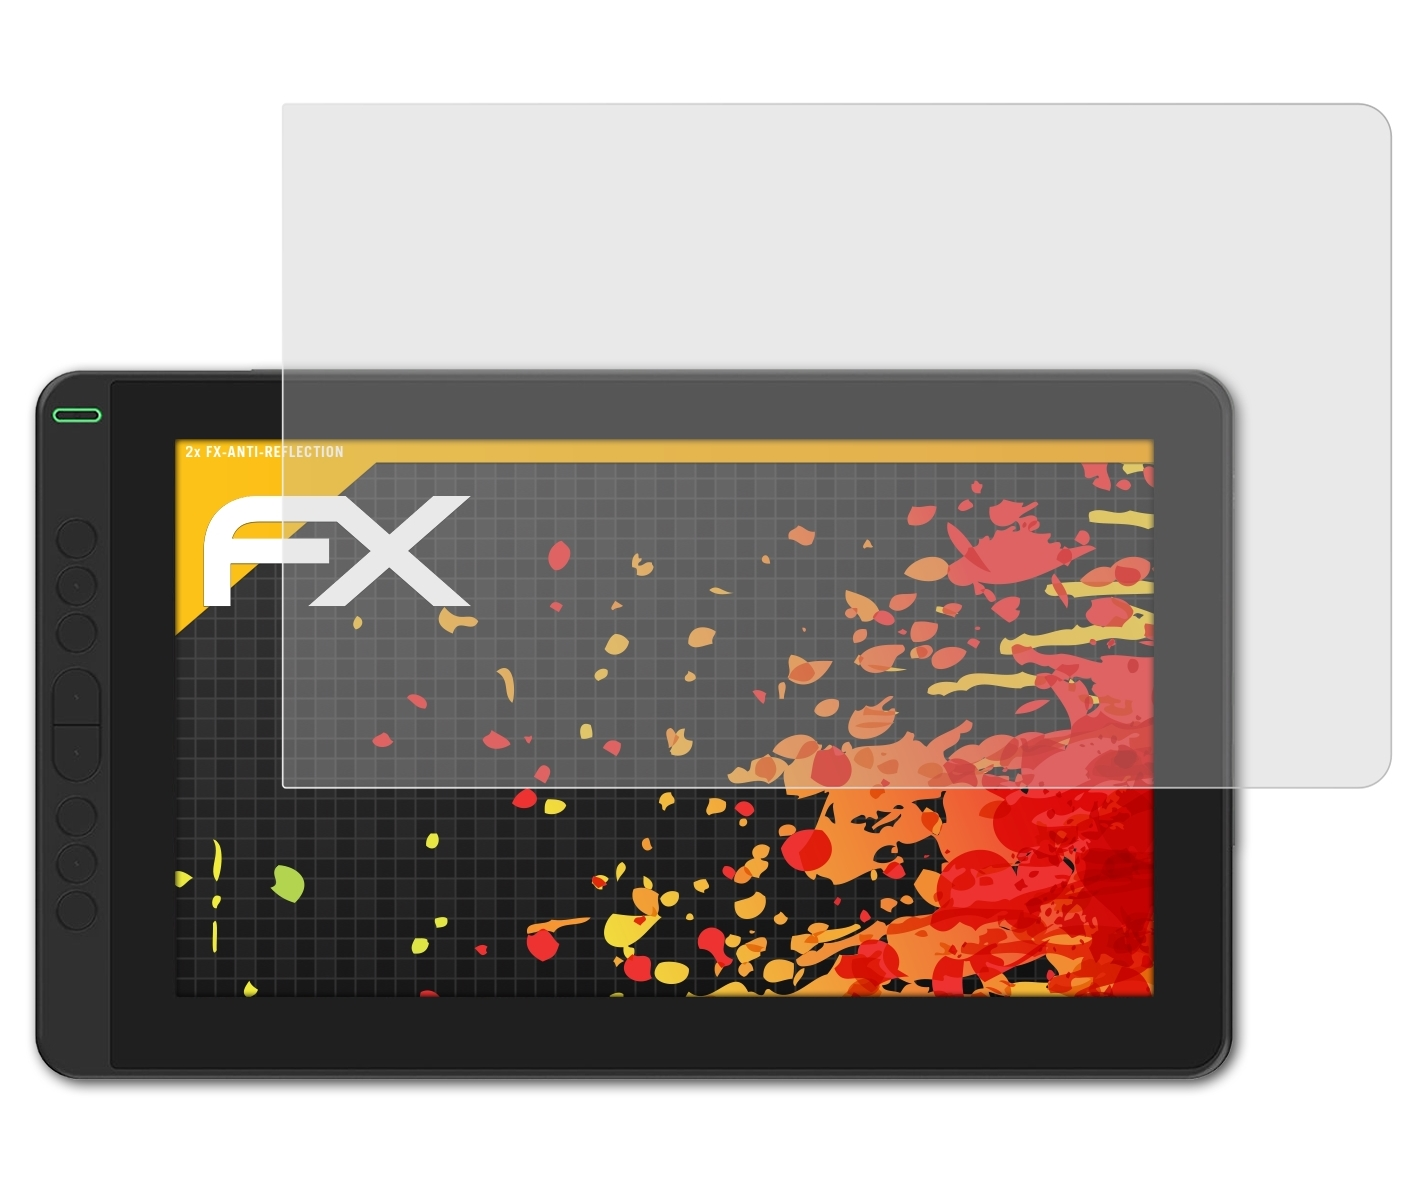 FX-Antireflex Huion ATFOLIX 13) Kamvas 2x Displayschutz(für